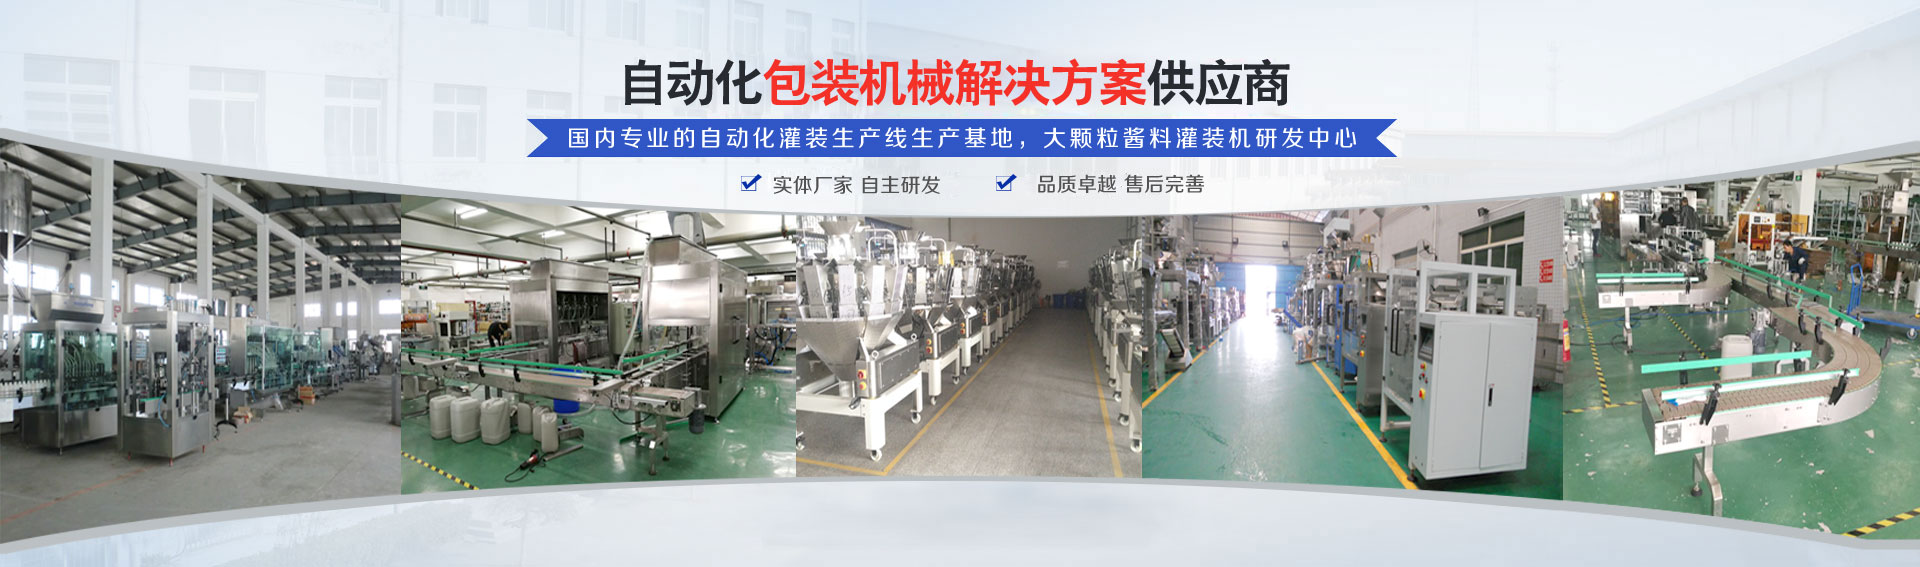 專(zhuan)業的(de)自動化灌裝機生產(chan)線研發基地